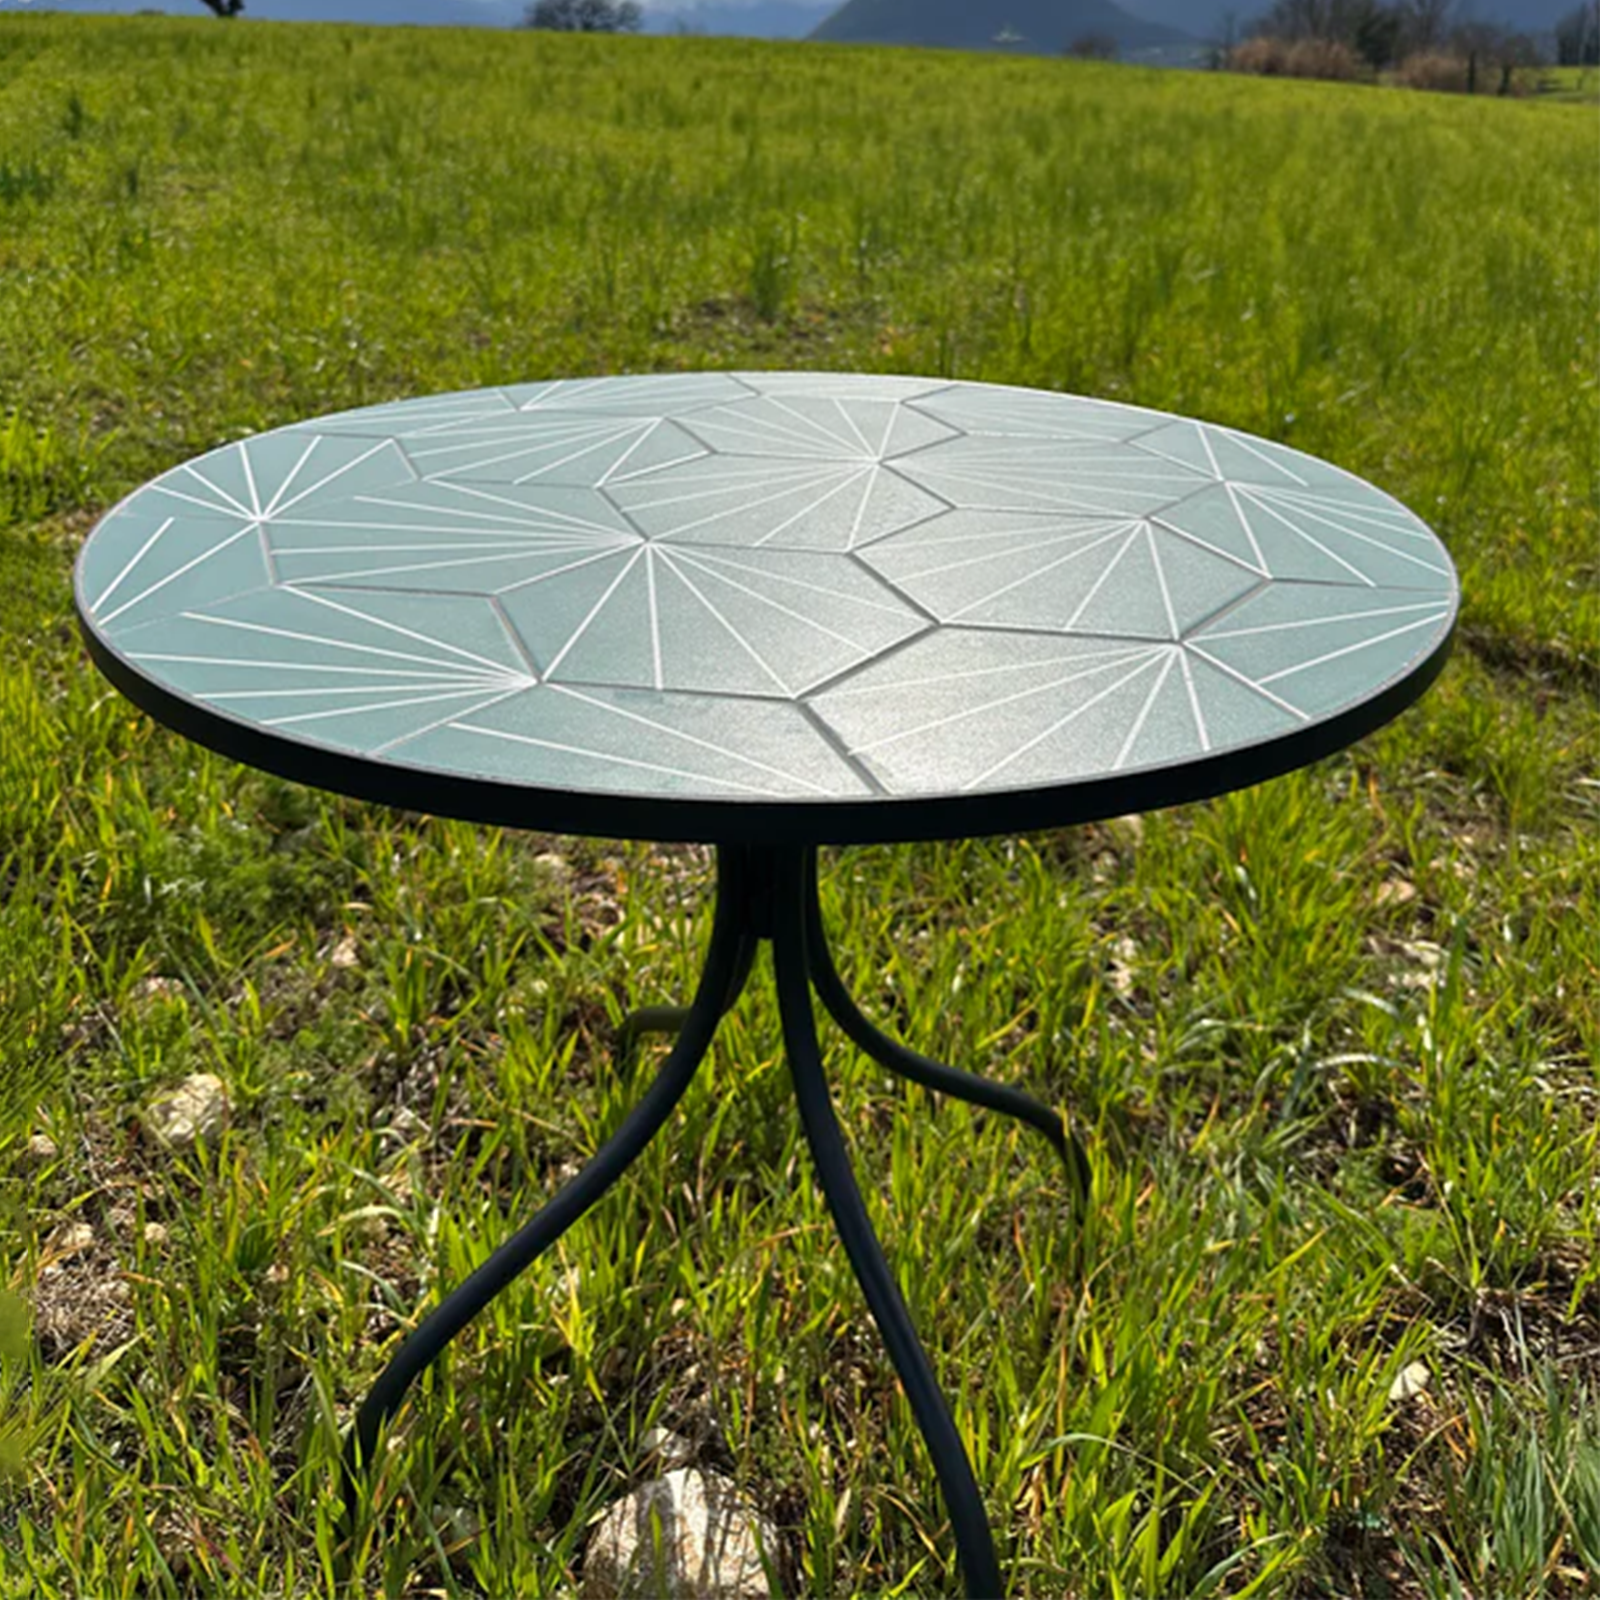 Tavolo bistrot in acciaio Decojardin New Age piano con ceramica mosaico per giardino